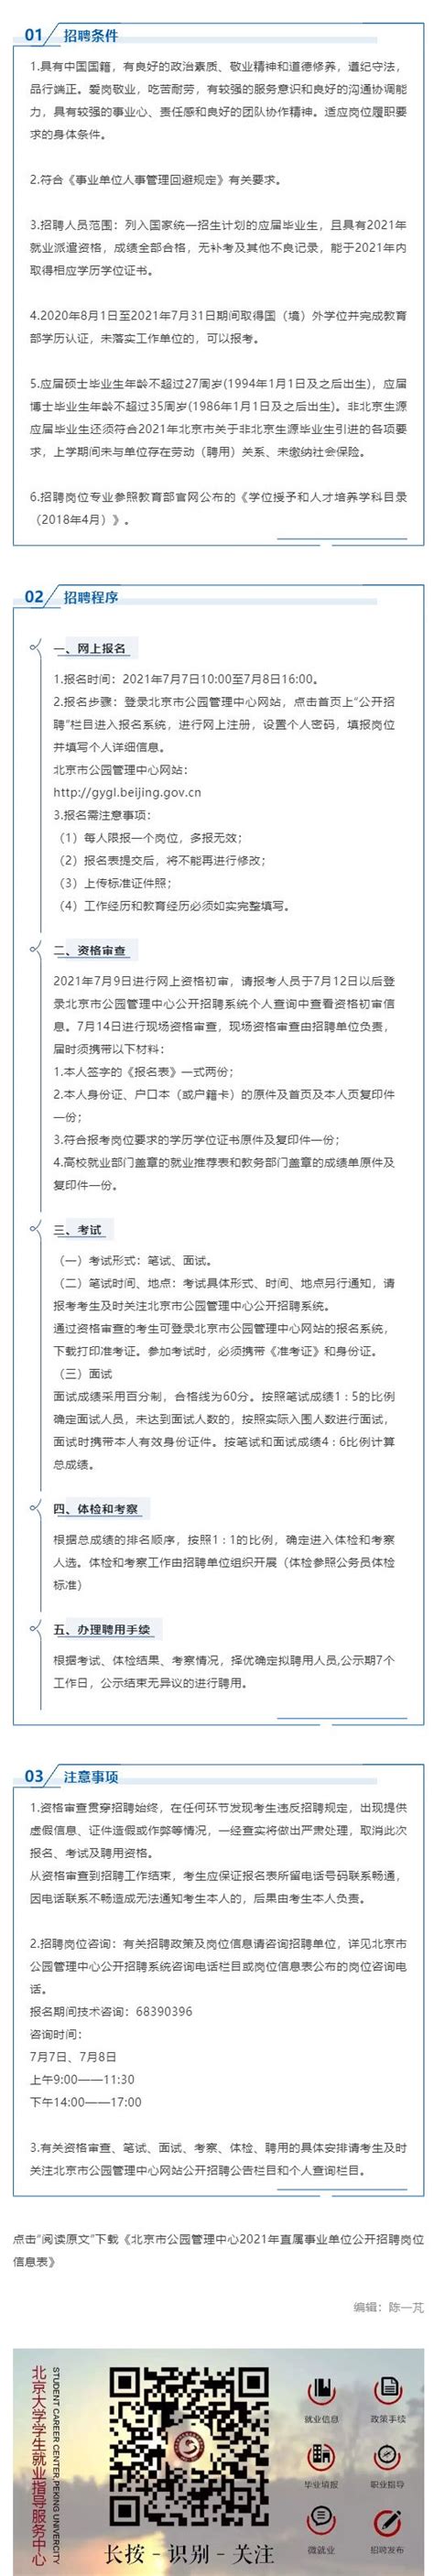 北京市公园管理中心2021年直属事业单位公开招聘工作人员公告-北大光华管理学院职业发展中心